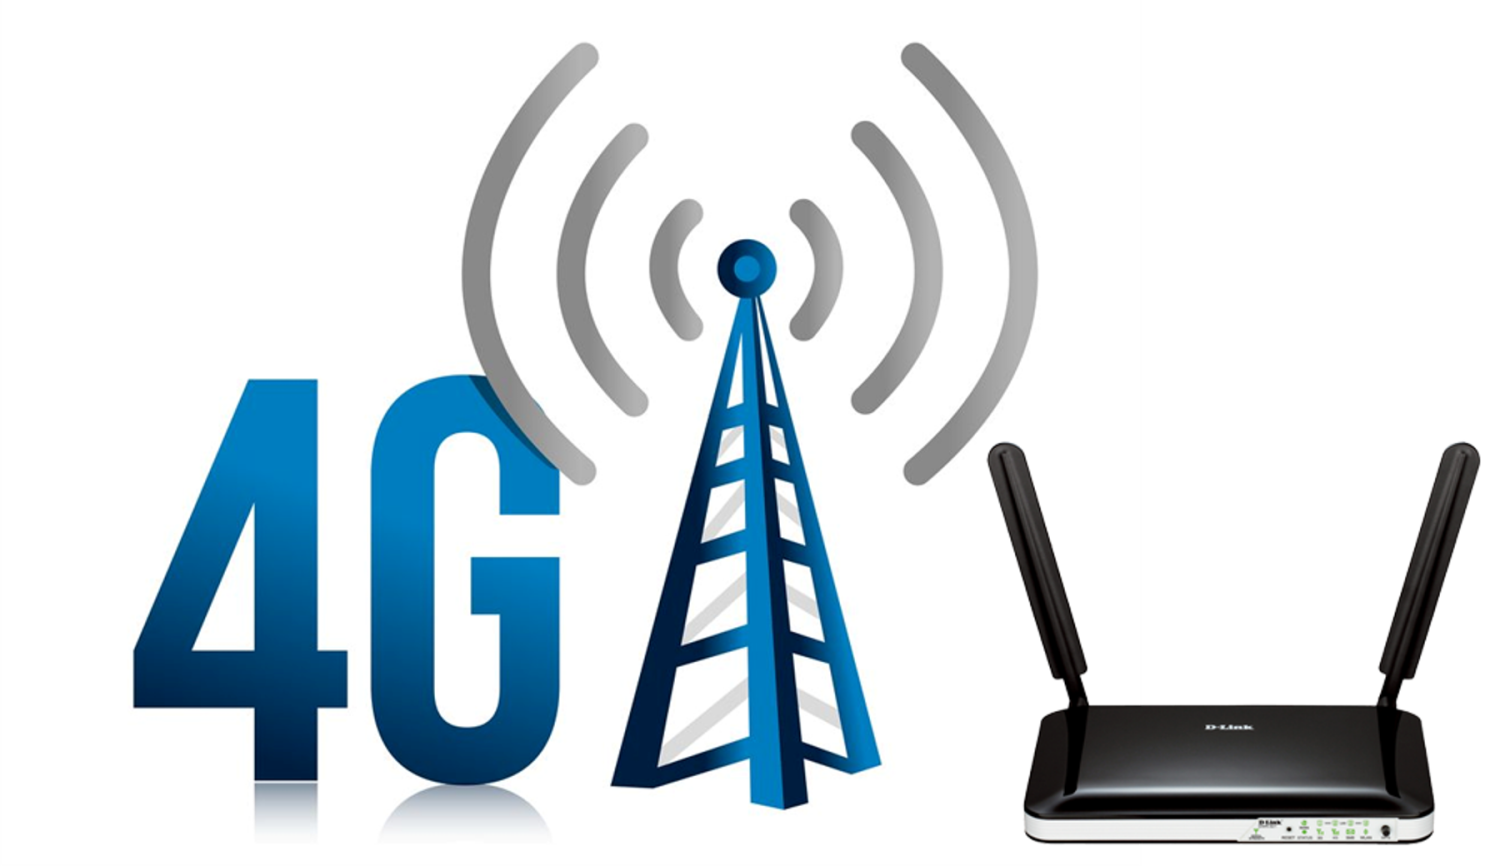 Плохой интернет 4g. Сети сотовой связи 4g. 4g LTE. 3g 4g LTE device. Мобильная сеть 4g (WIMAX va LTE).